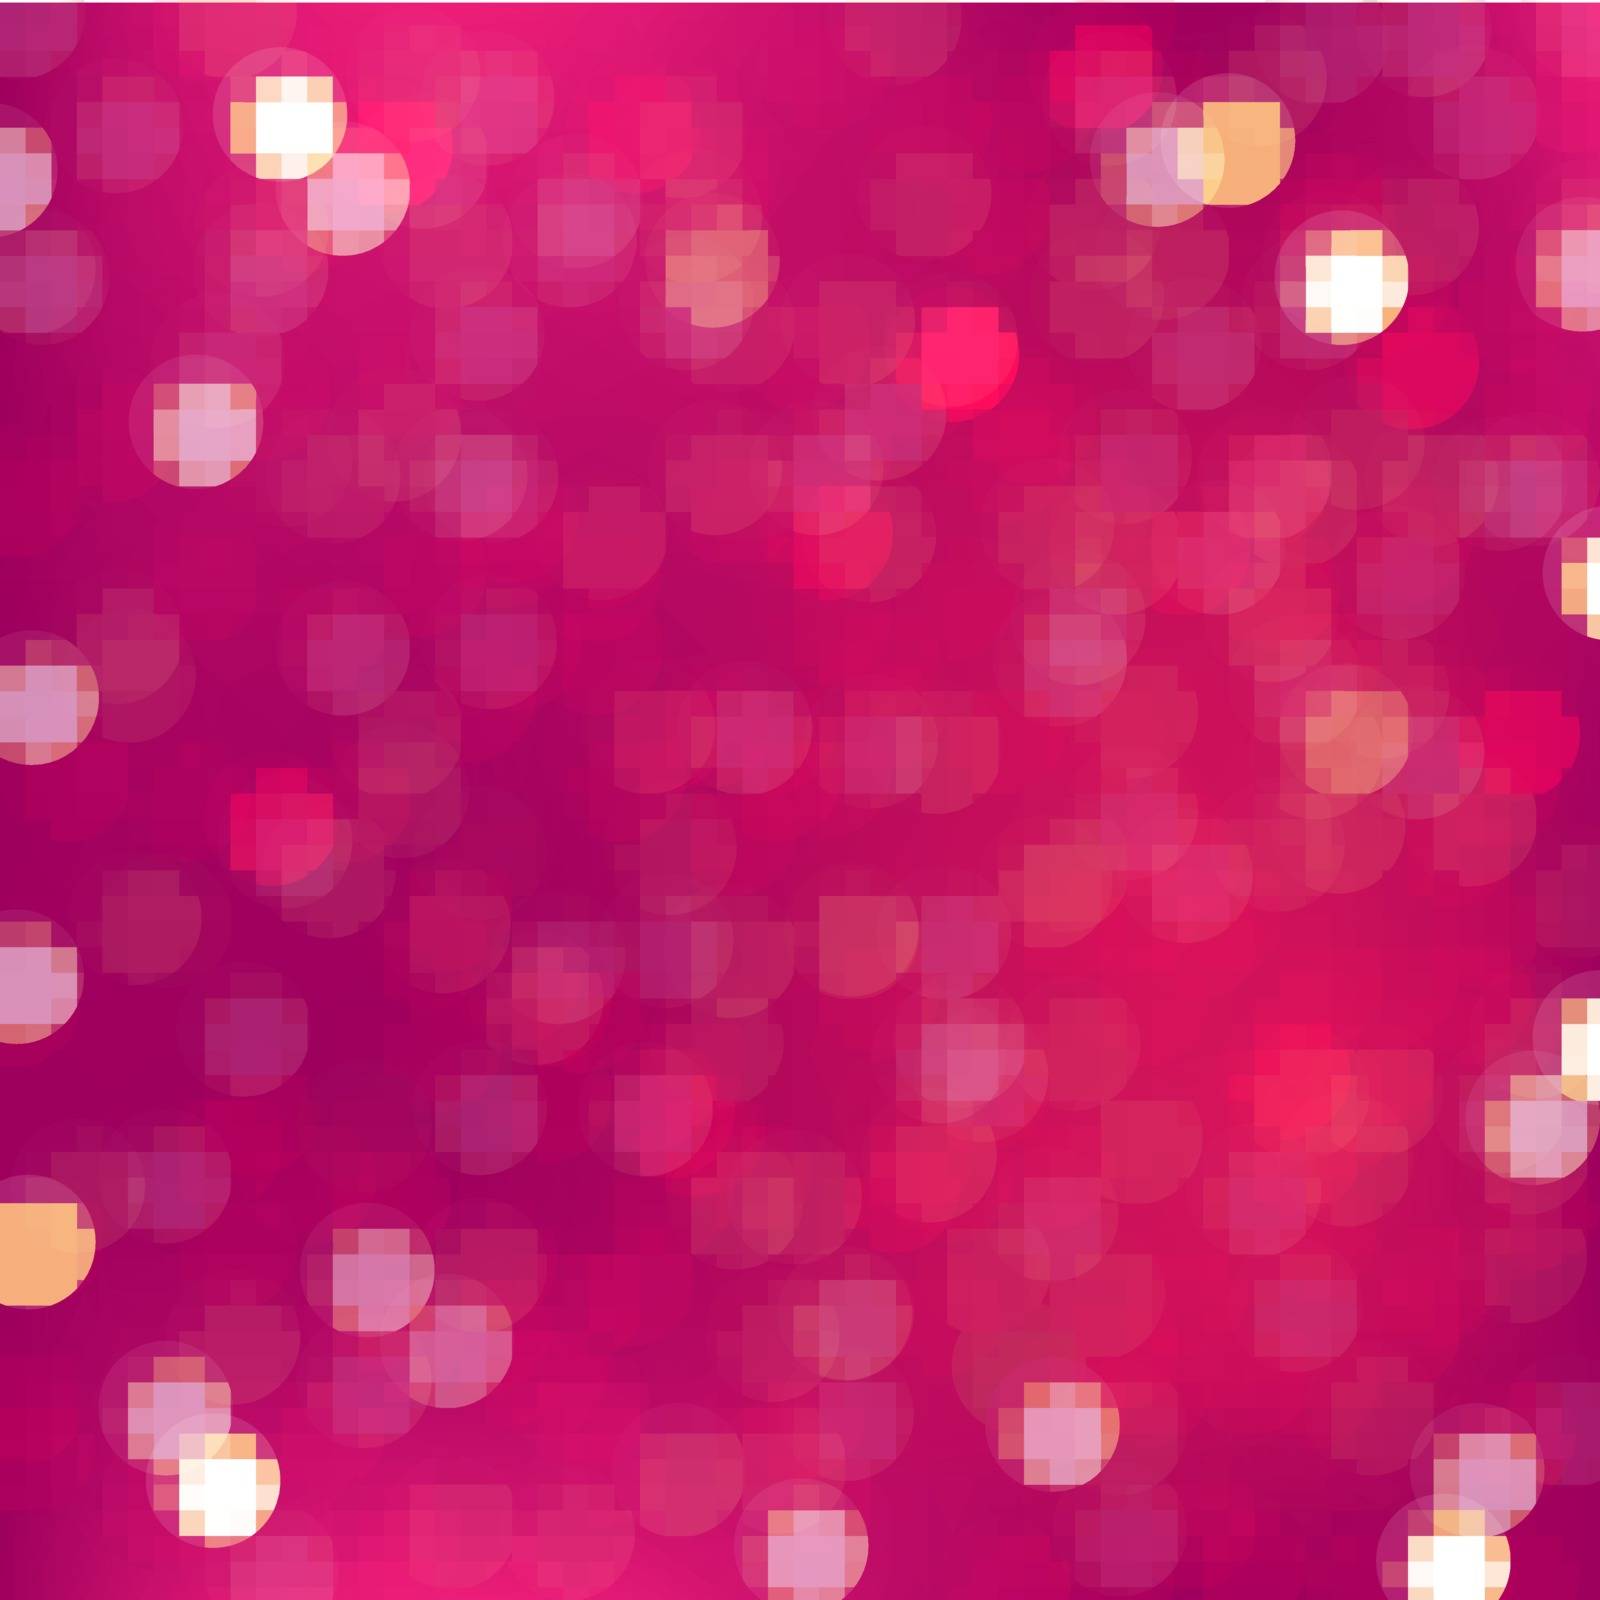 Pink Blurred Background by adamson